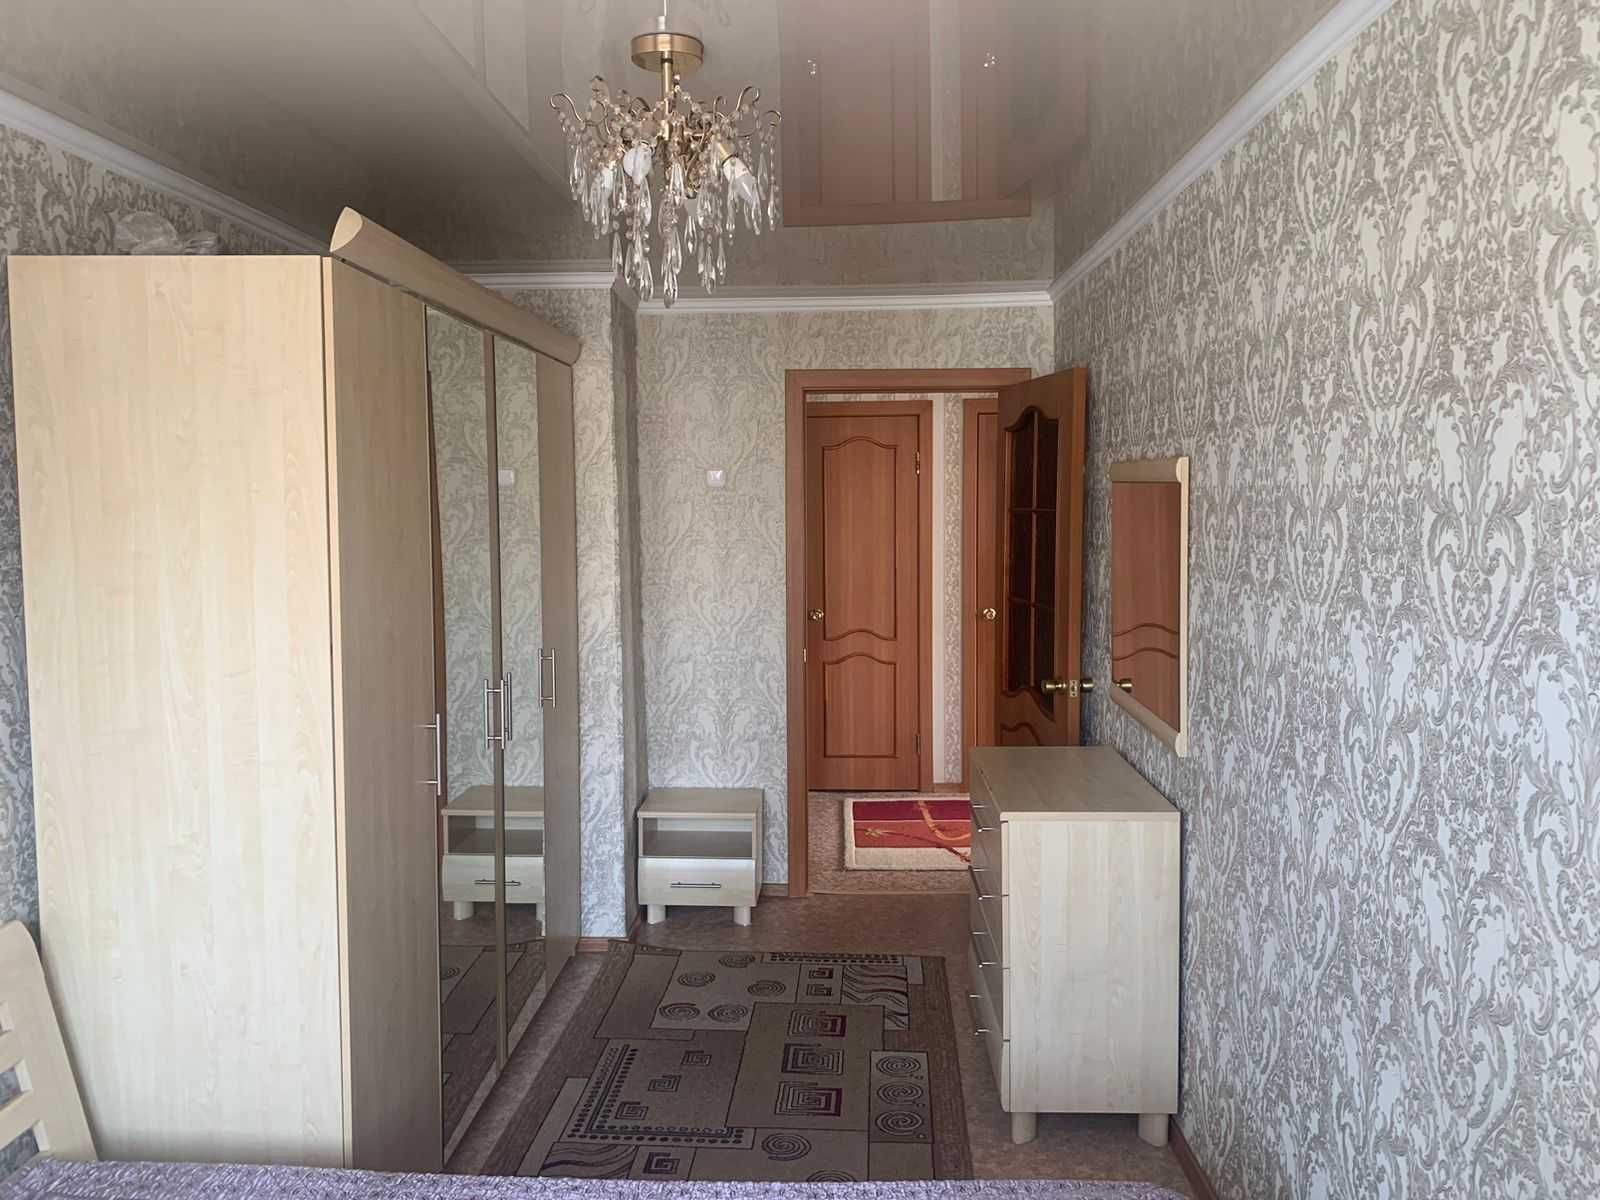 2-х комн. квартира с ремонтом и мебелью по Абдирова. Помощь в ипотеке.